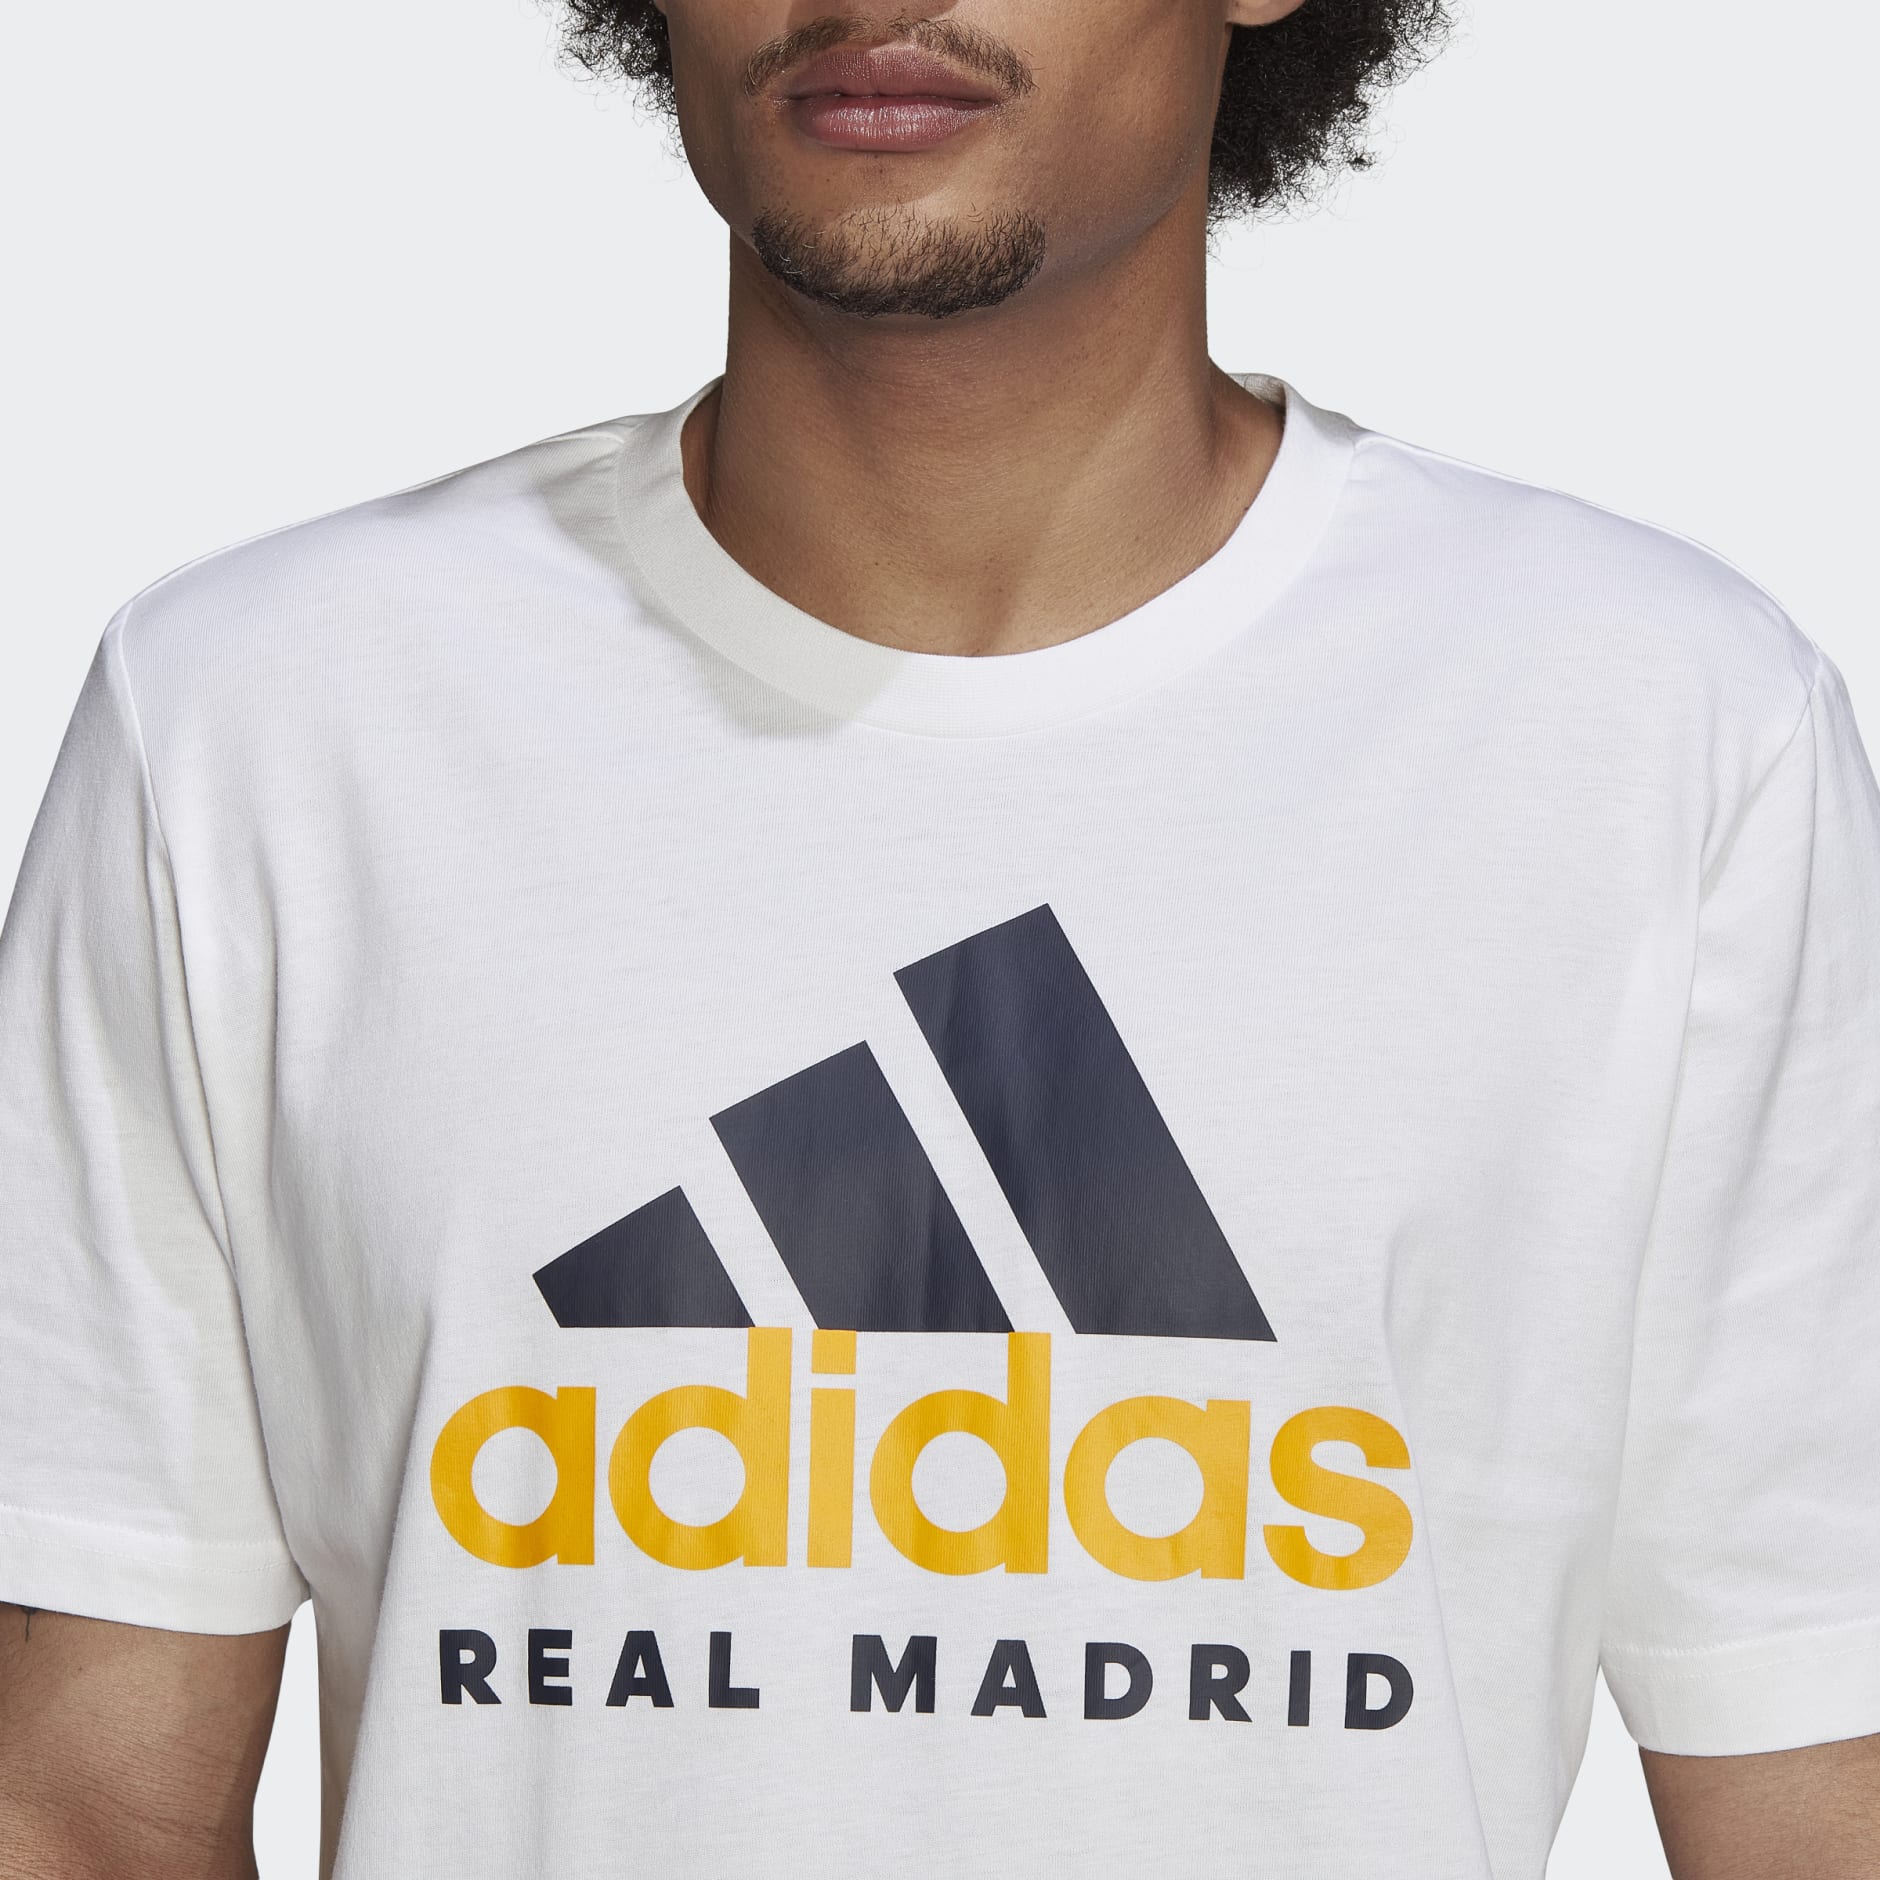 Ciencias Por qué no Laboratorio Camiseta ADN Real Madrid